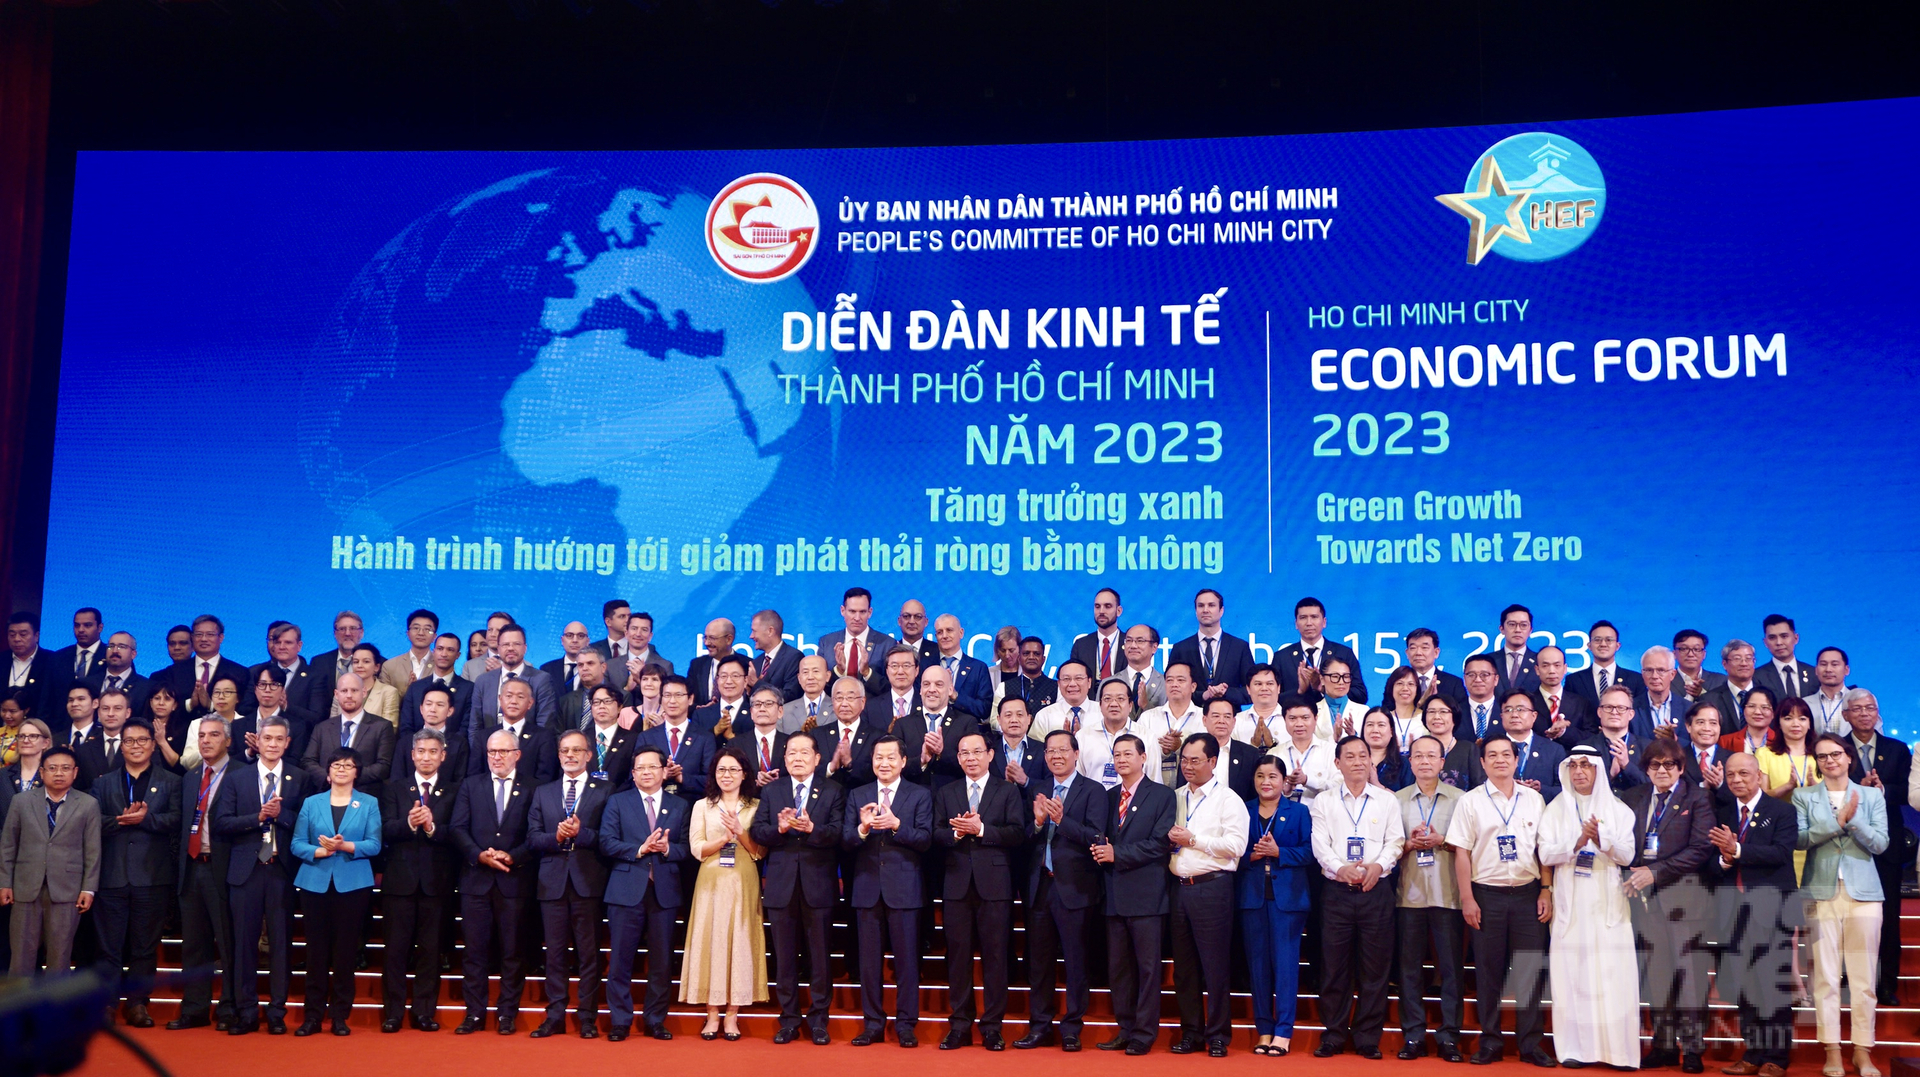 Phó Thủ tướng Lê Minh Khái chụp hình lưu niệm cùng các đại biểu Diễn đàn Kinh tế TP.HCM 2023. Ảnh: Nguyễn Thủy.